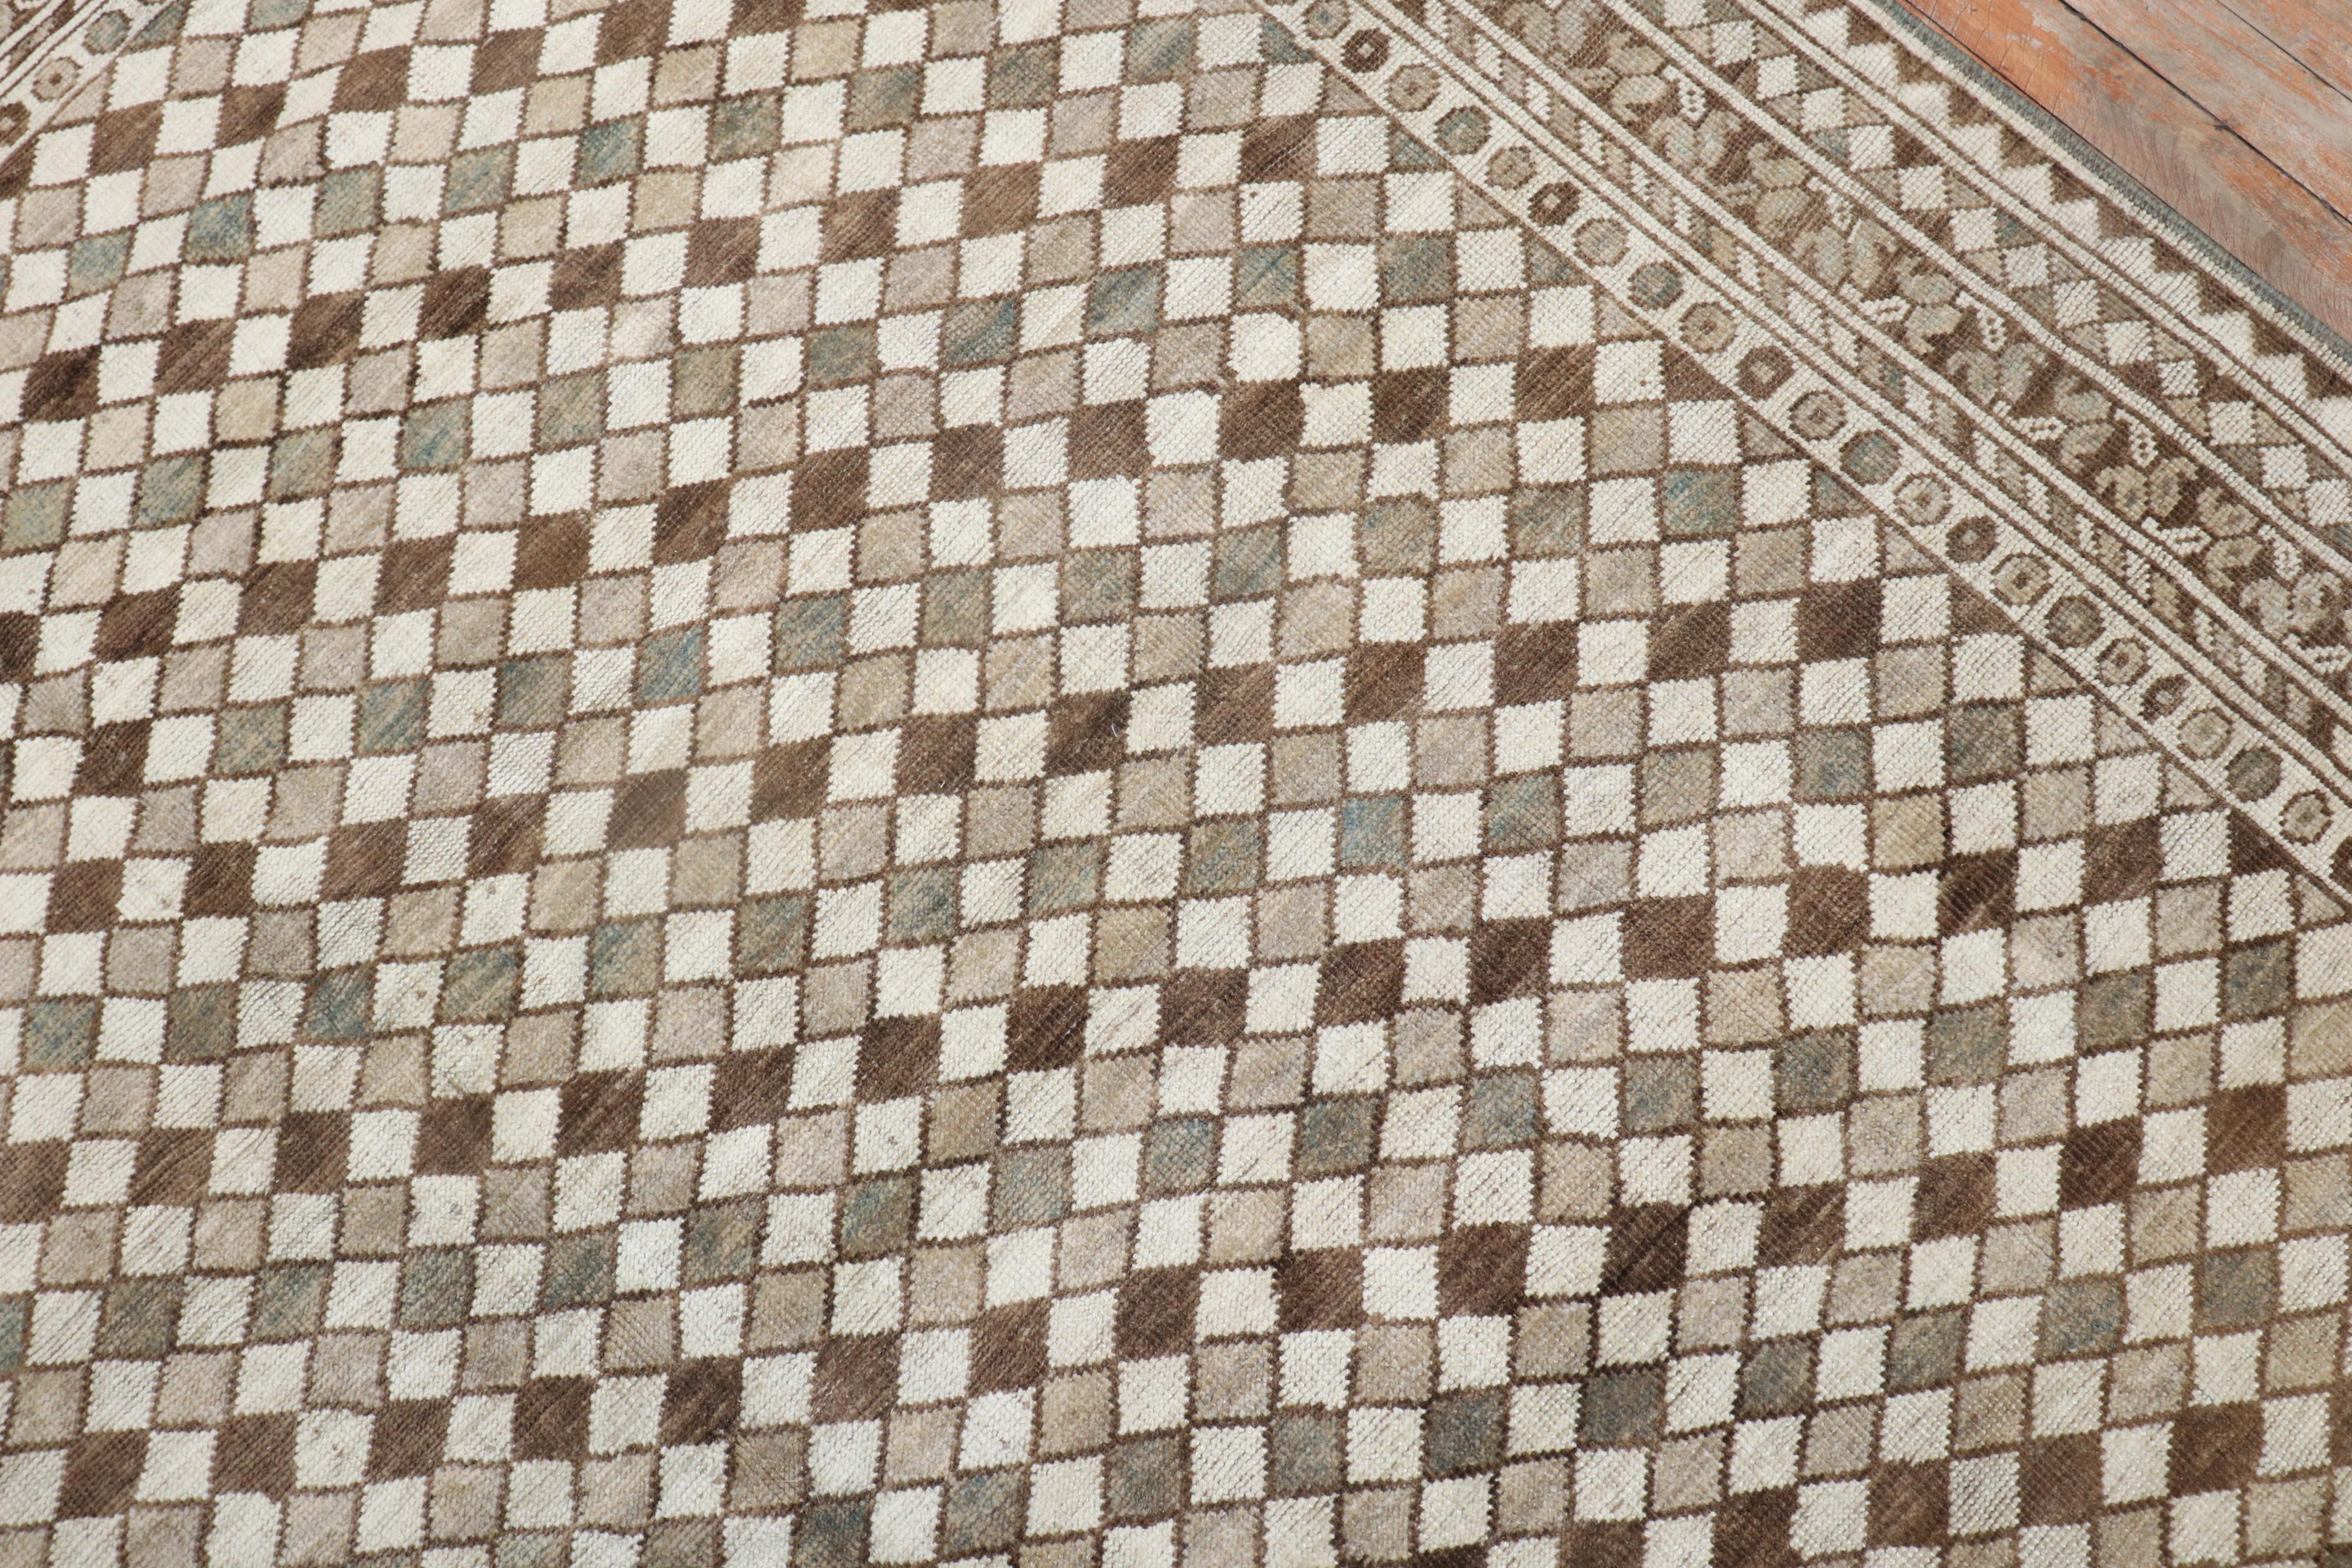 Kleiner afghanischer Ersari-Teppich in Elfenbein, Grau und Braun aus den 1940er Jahren

Maße: 6'7'' x 9'2''.